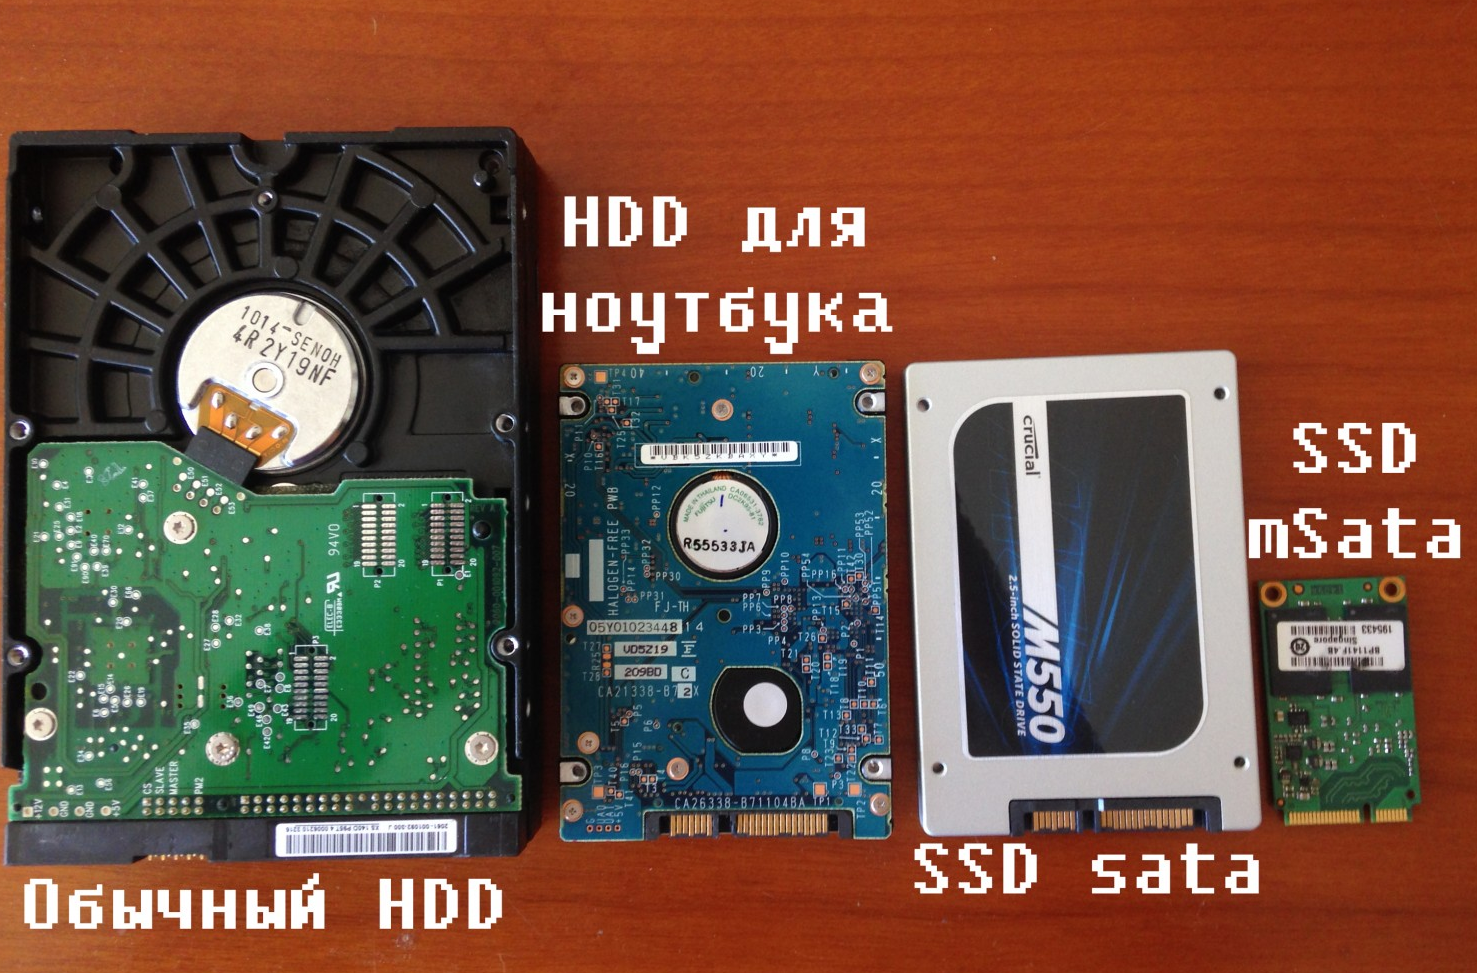 Рис.1. Сравнение размеров HDD и SSD